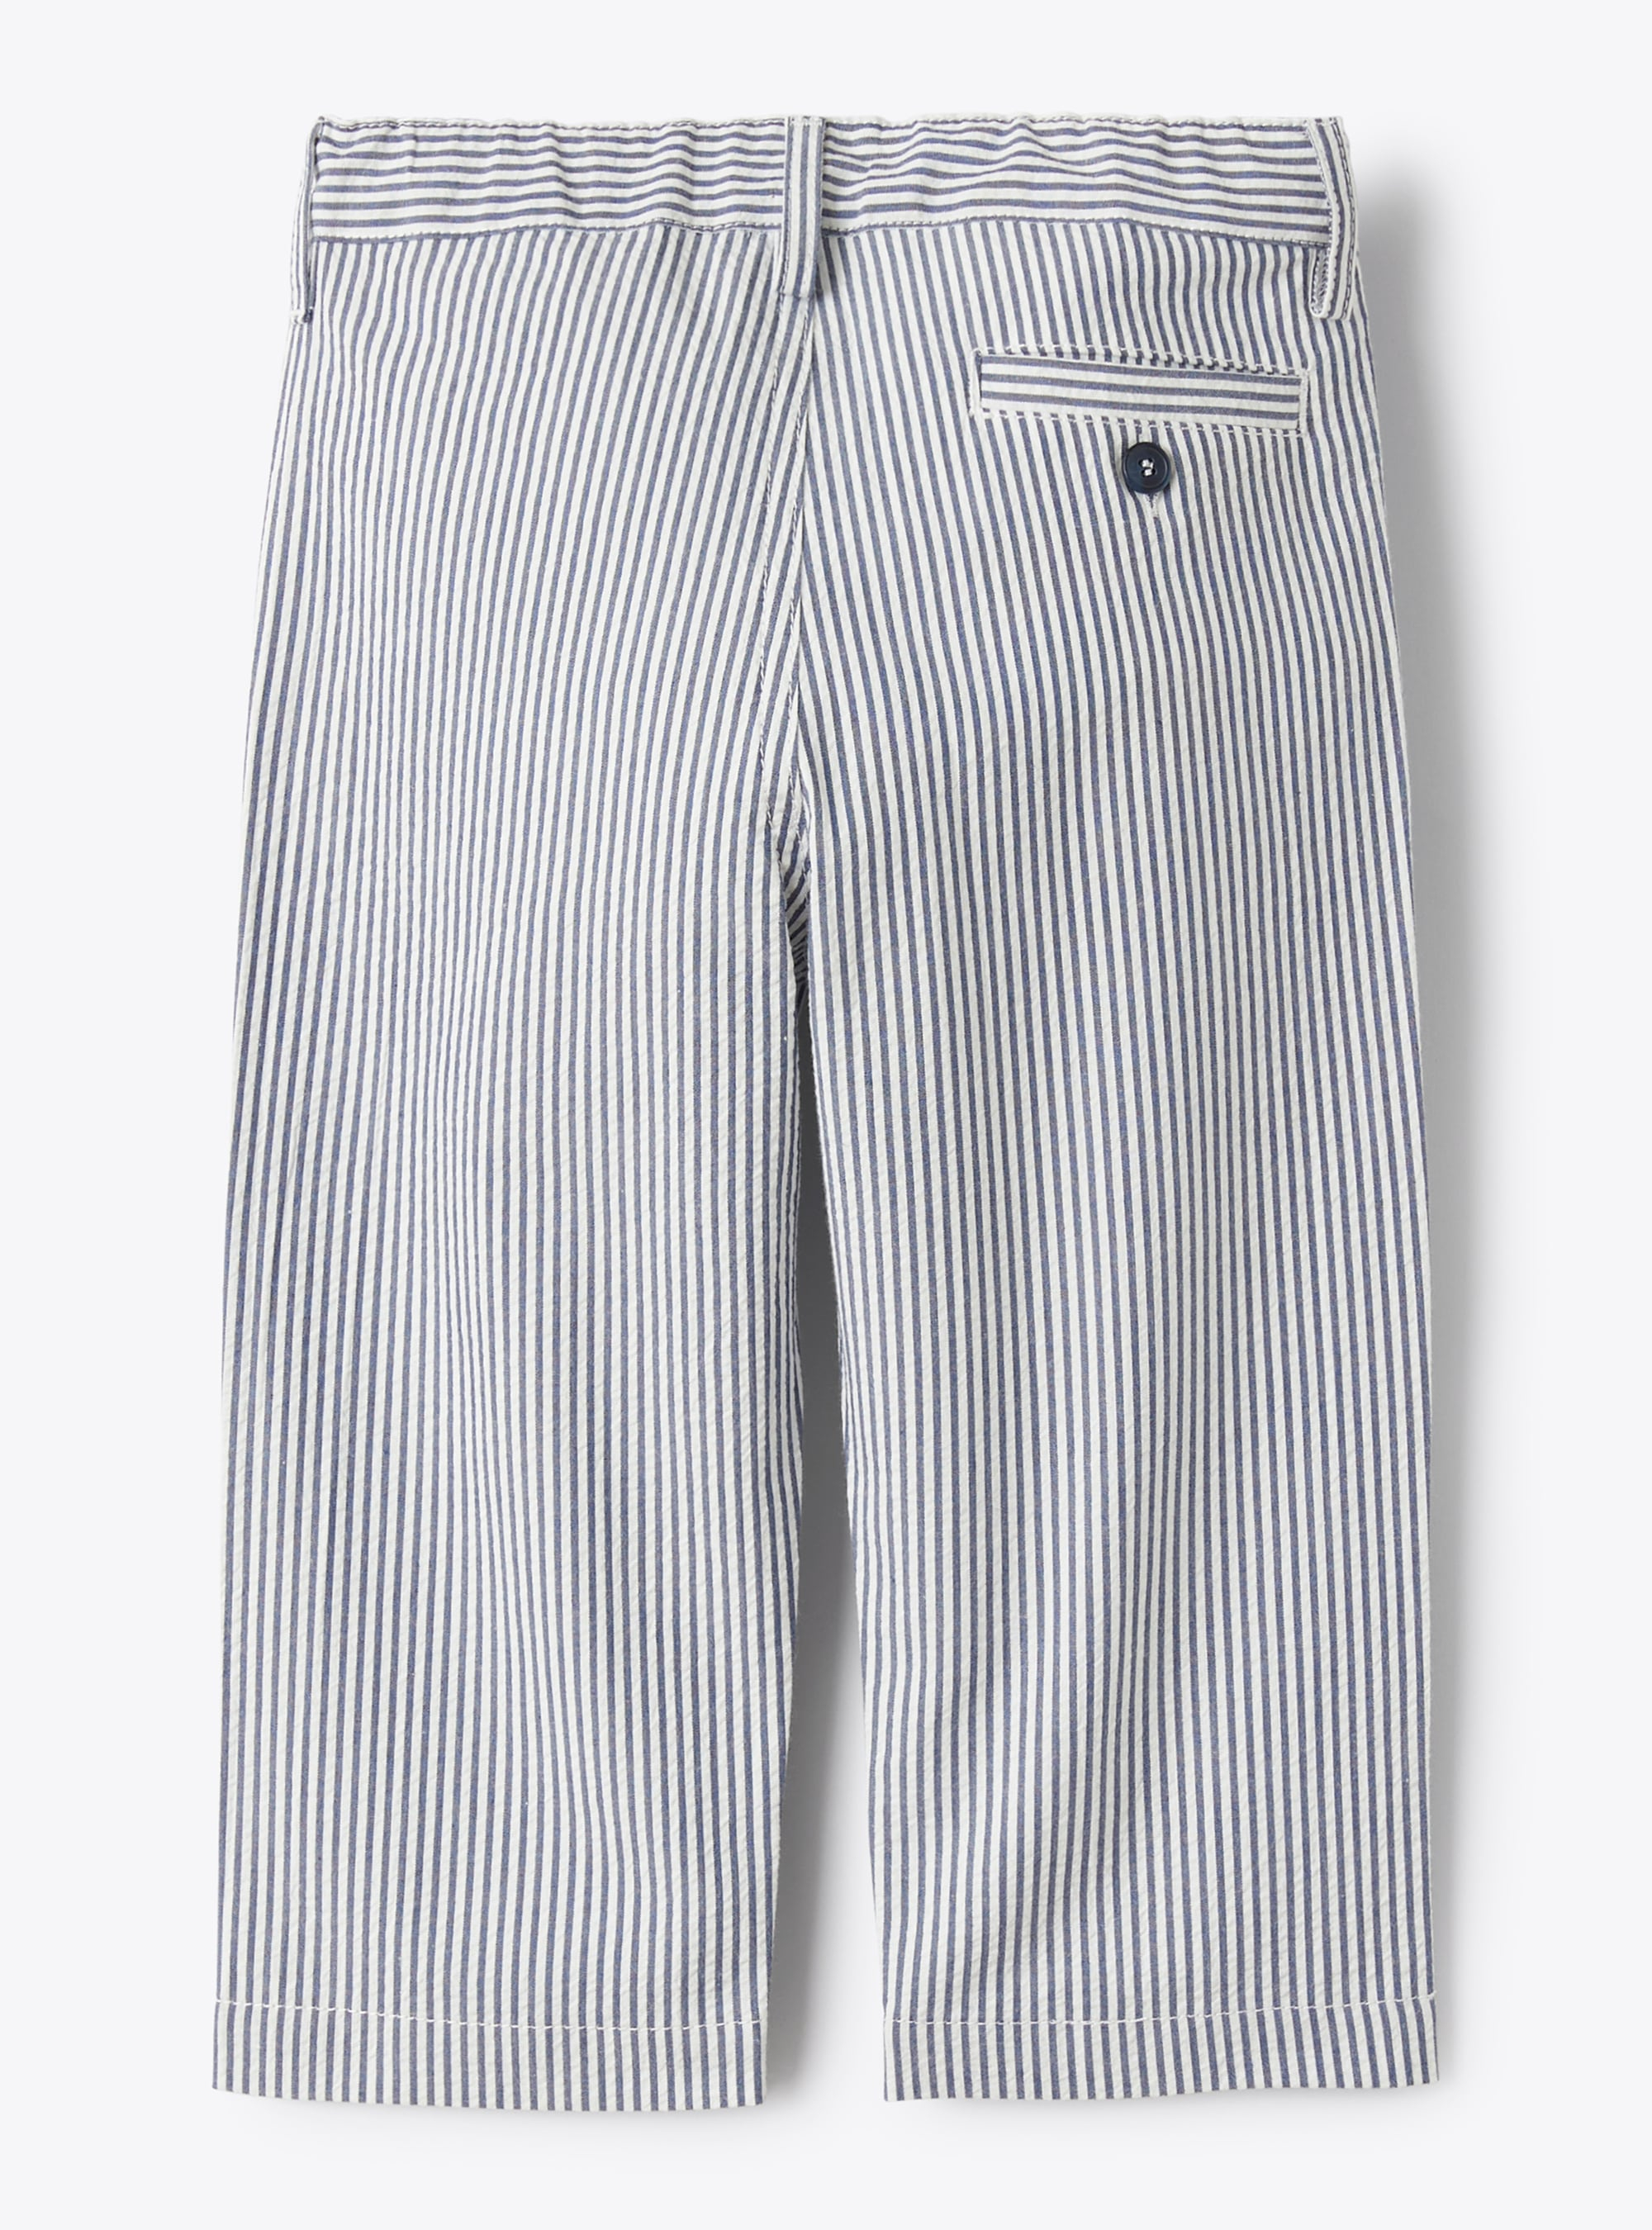 Pantalone da neonato in seersucker a righe blu e bianche - Blu | Il Gufo